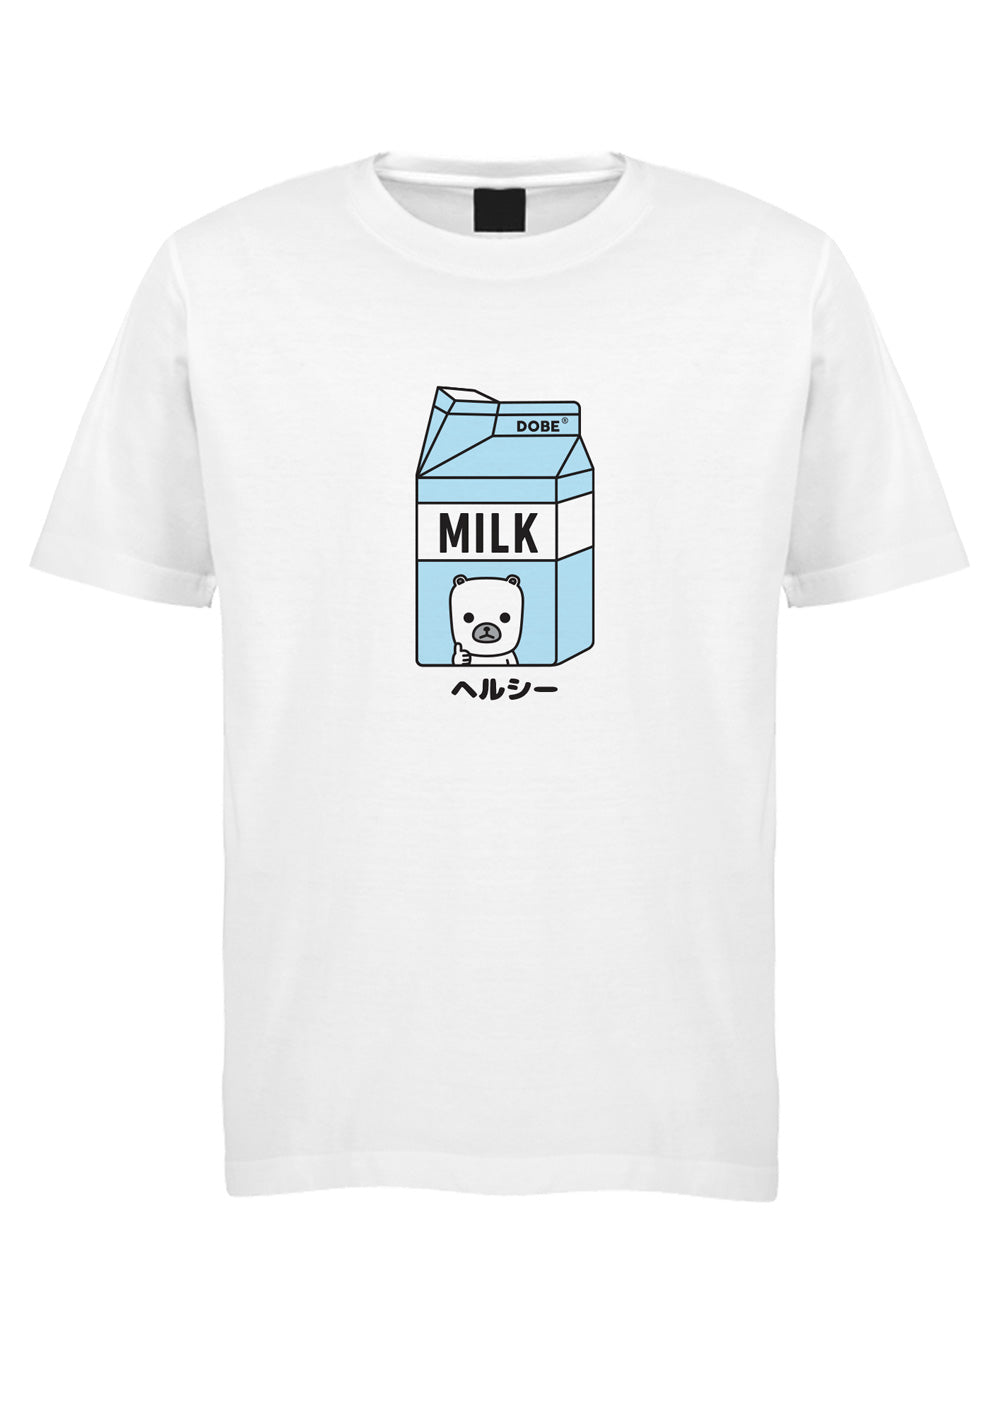 Dobe Milk